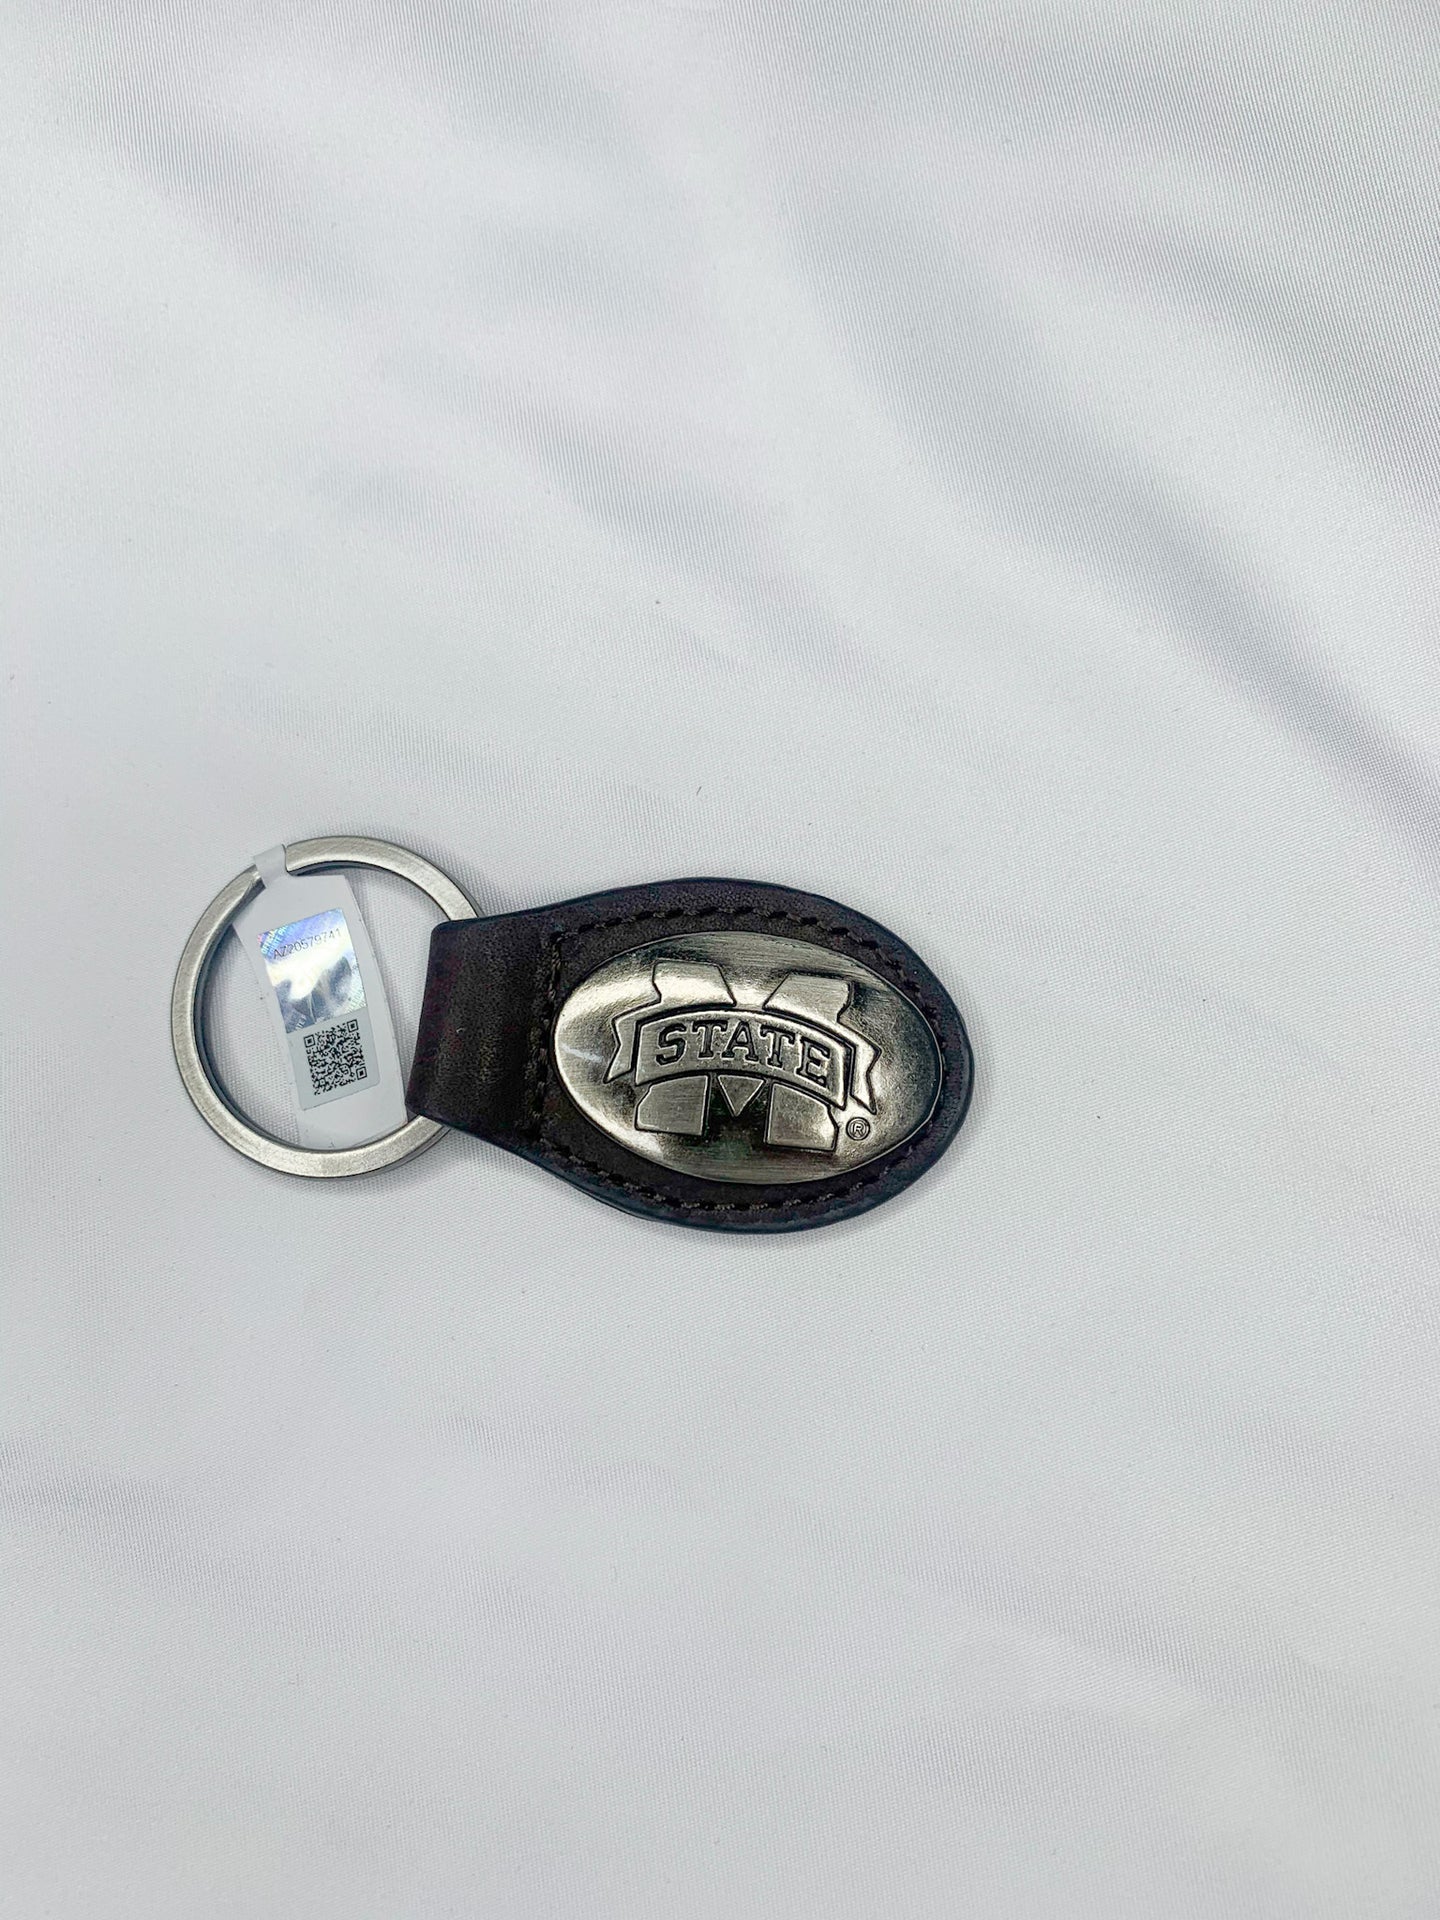 Zep Pro Men's Small Oval Concho Key Chain